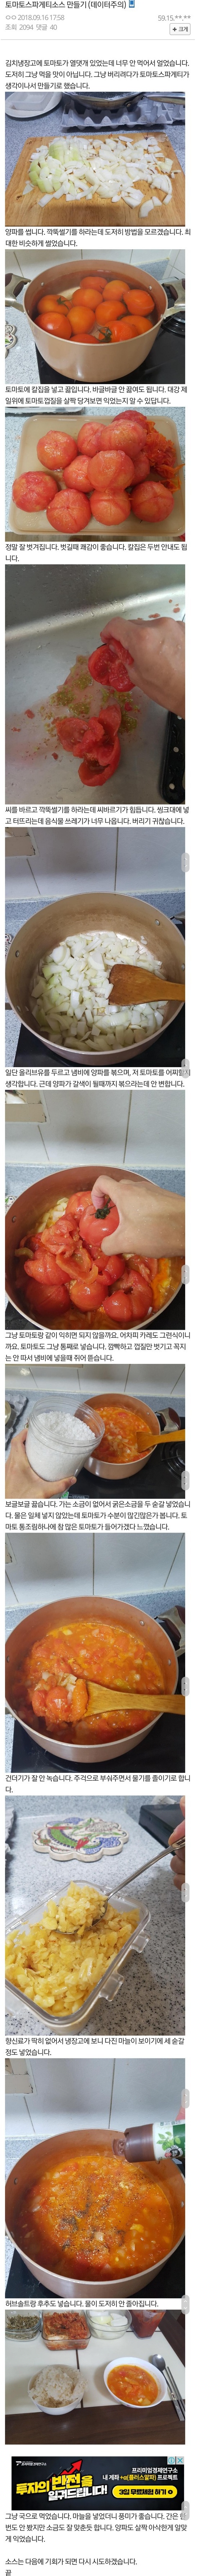 디씨인의 토마토 스파게티 소스 만들기 .jpg.jpg